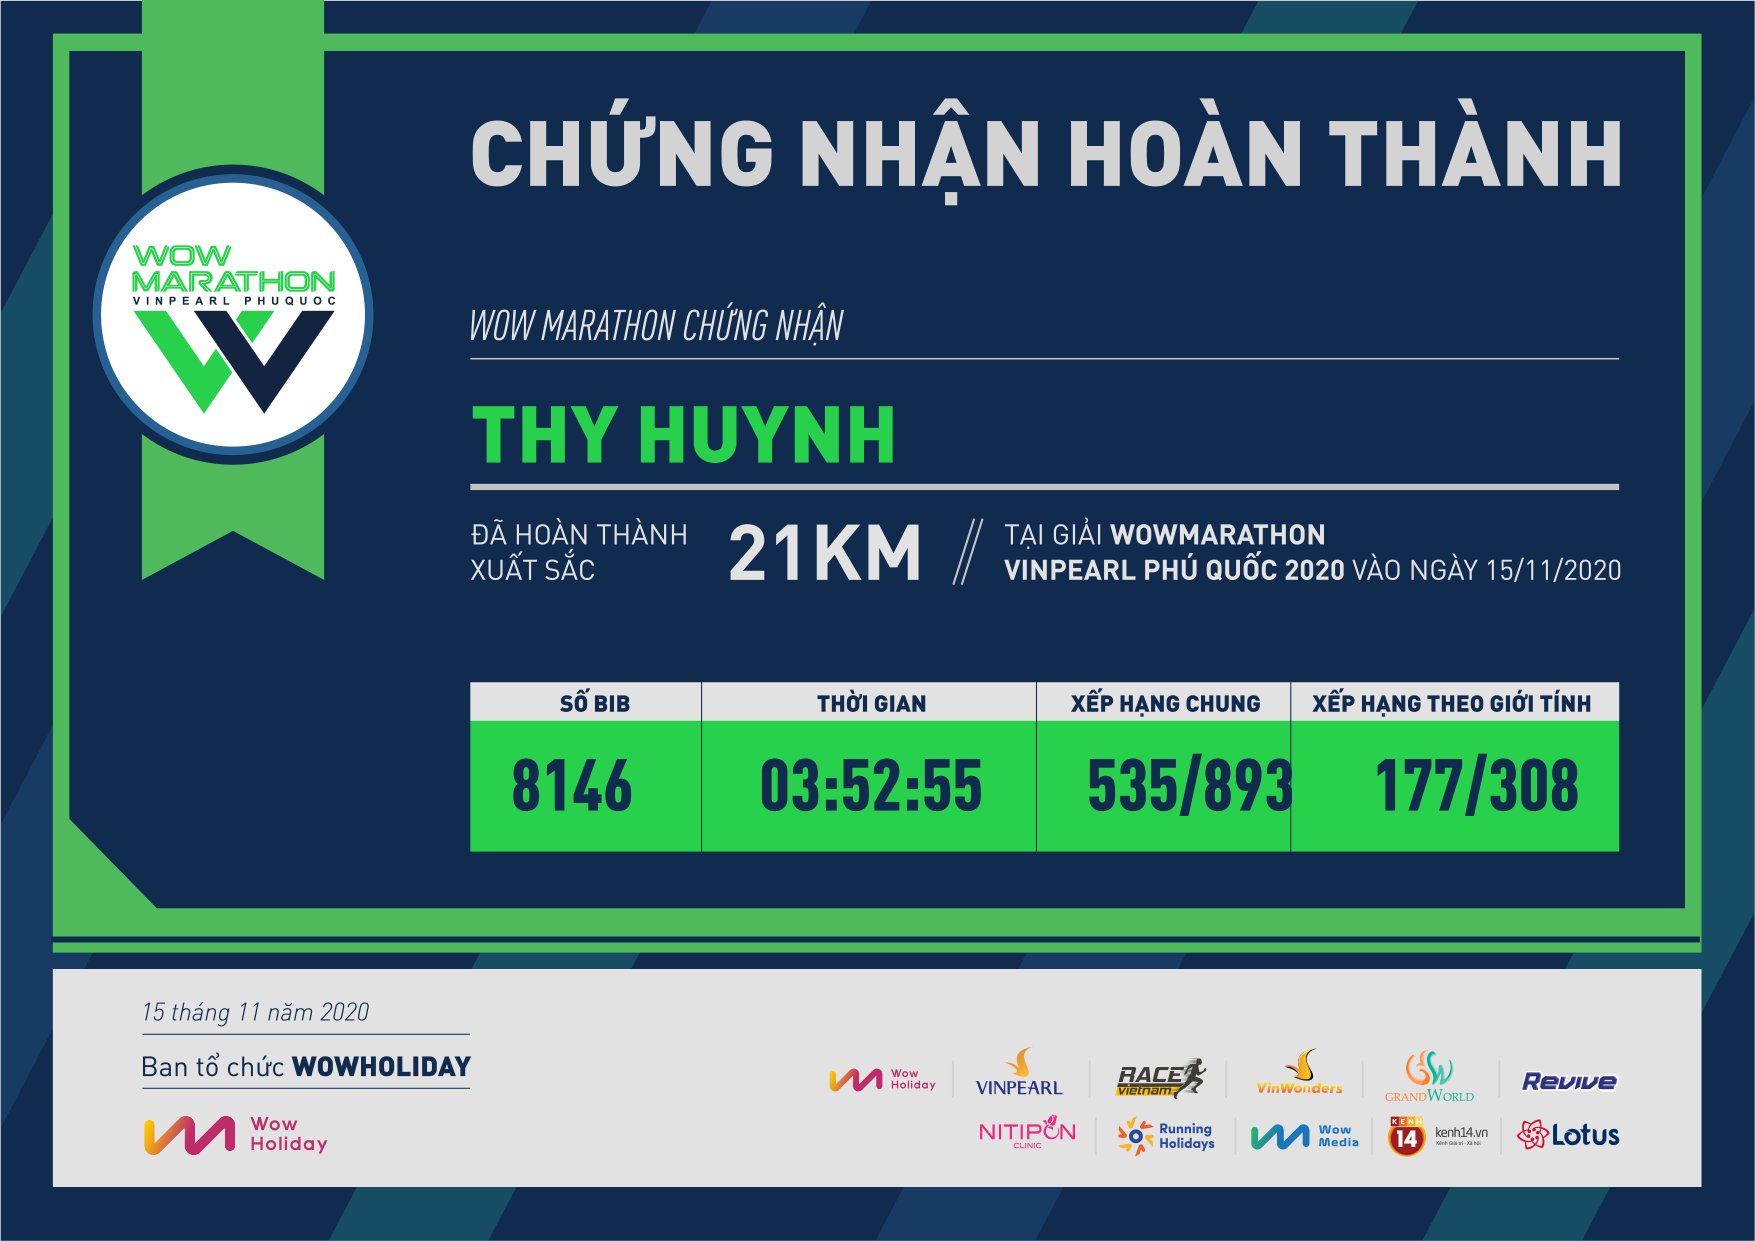 8146 - Thy Huynh